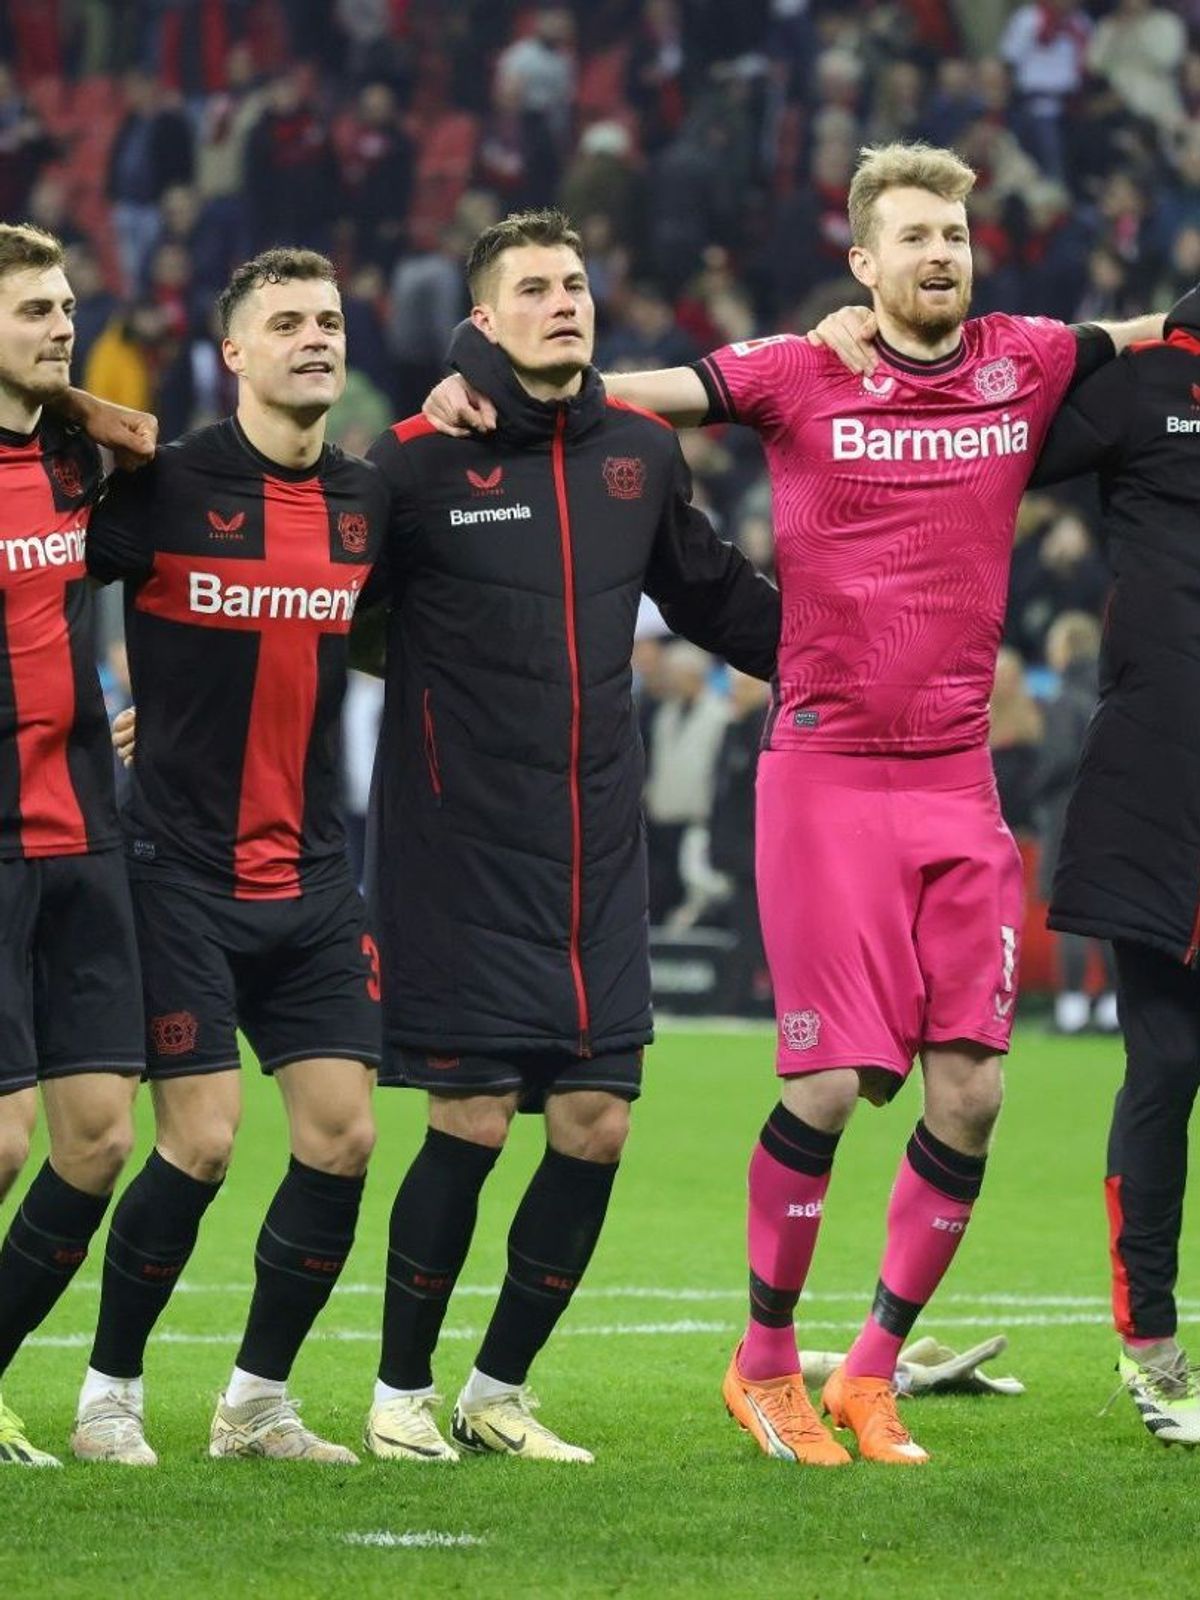 Jubelt Bayer Leverkusen am 31. Spieltag erneut?